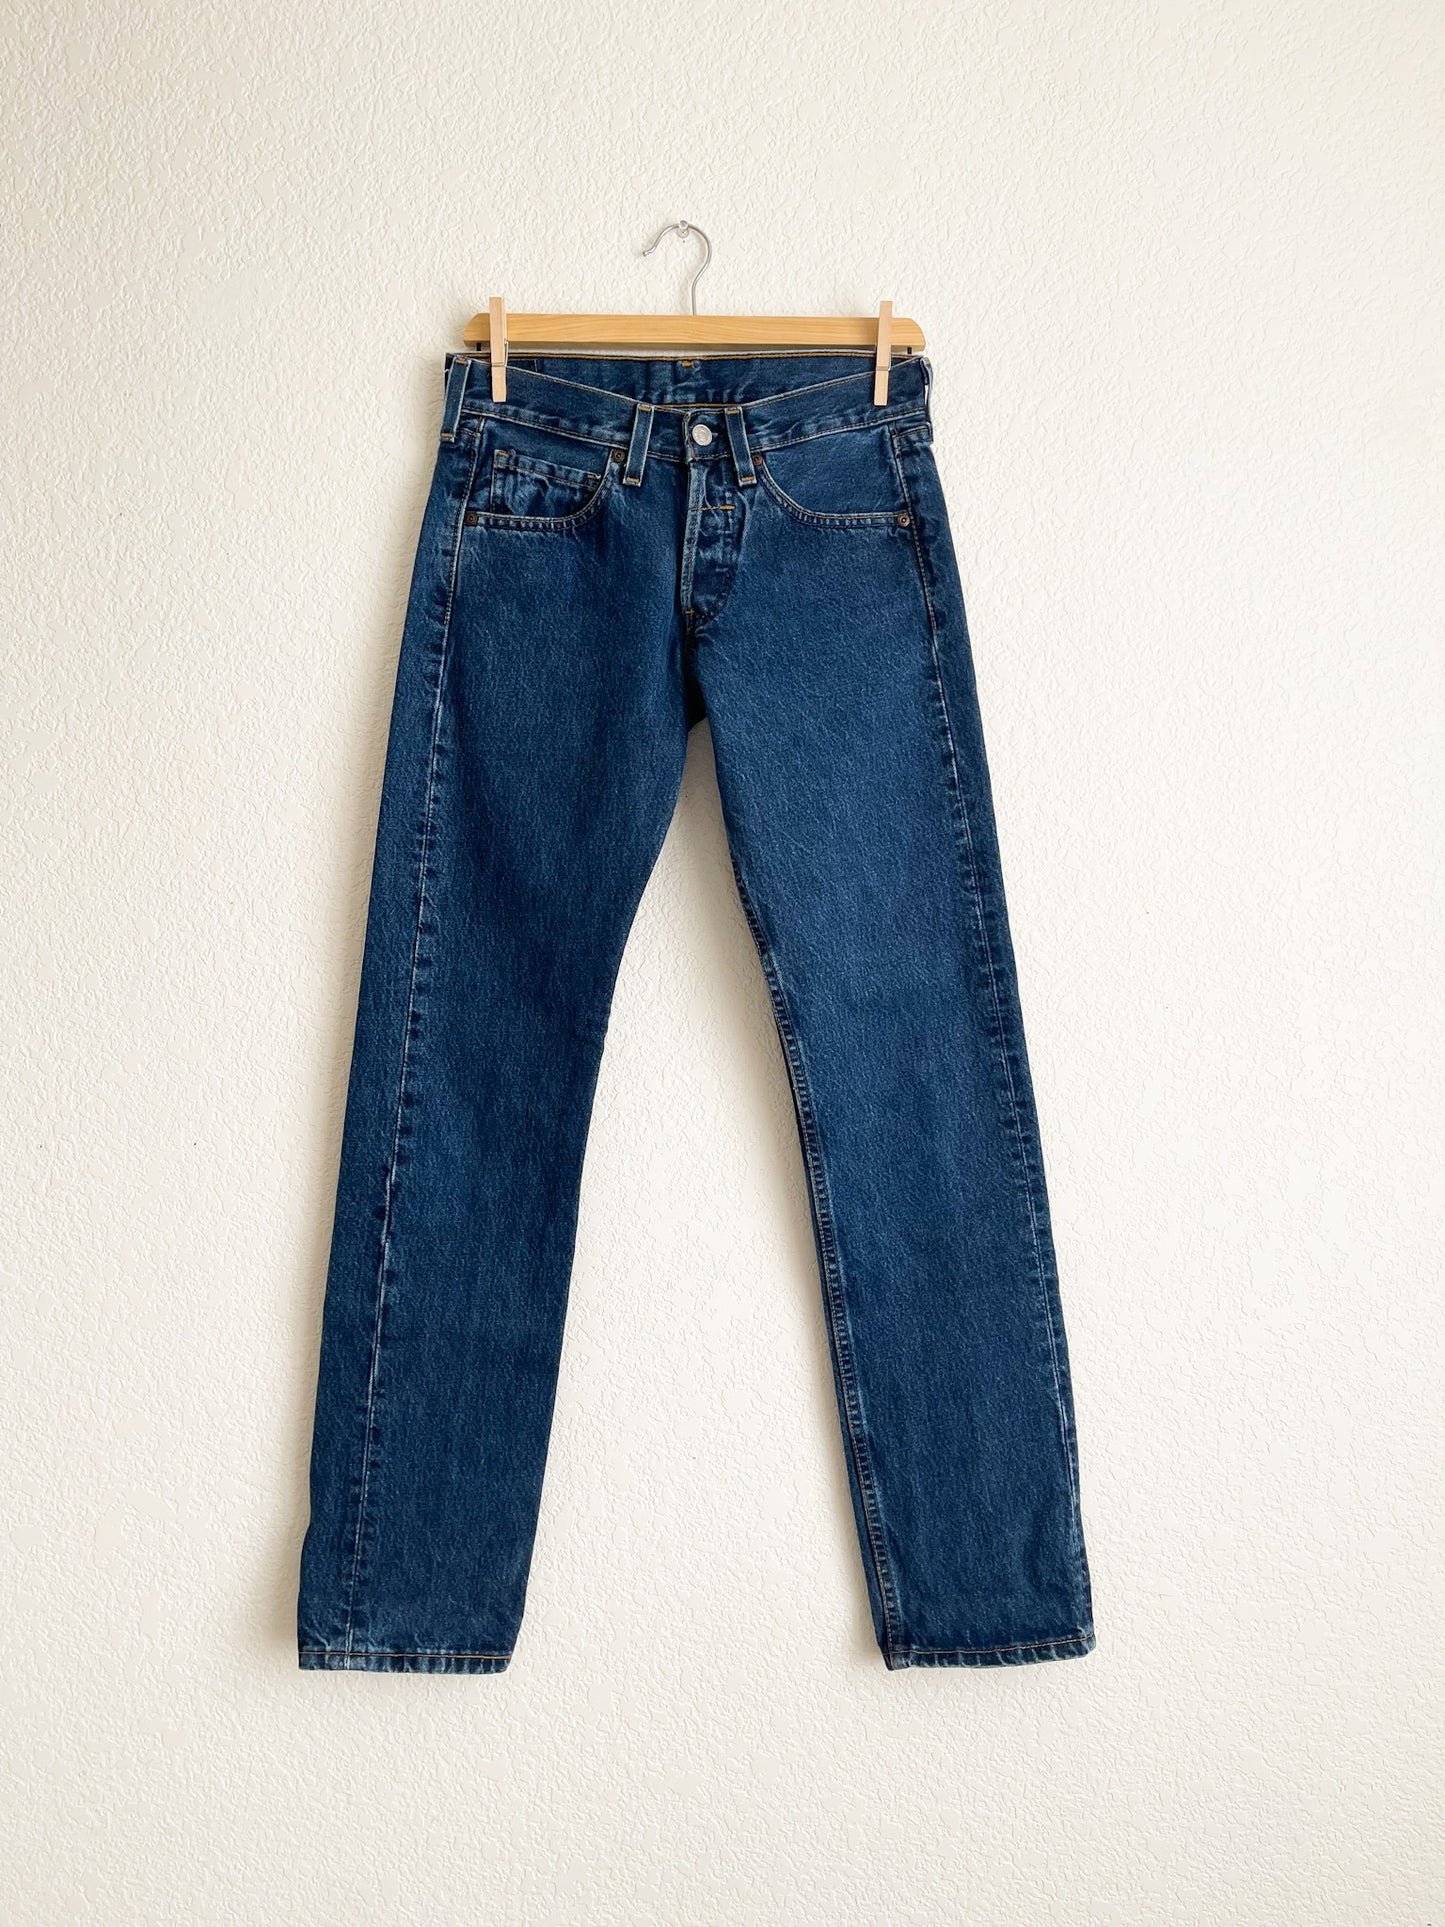 Vintage Levi's 502 Jeans - 29" Waist